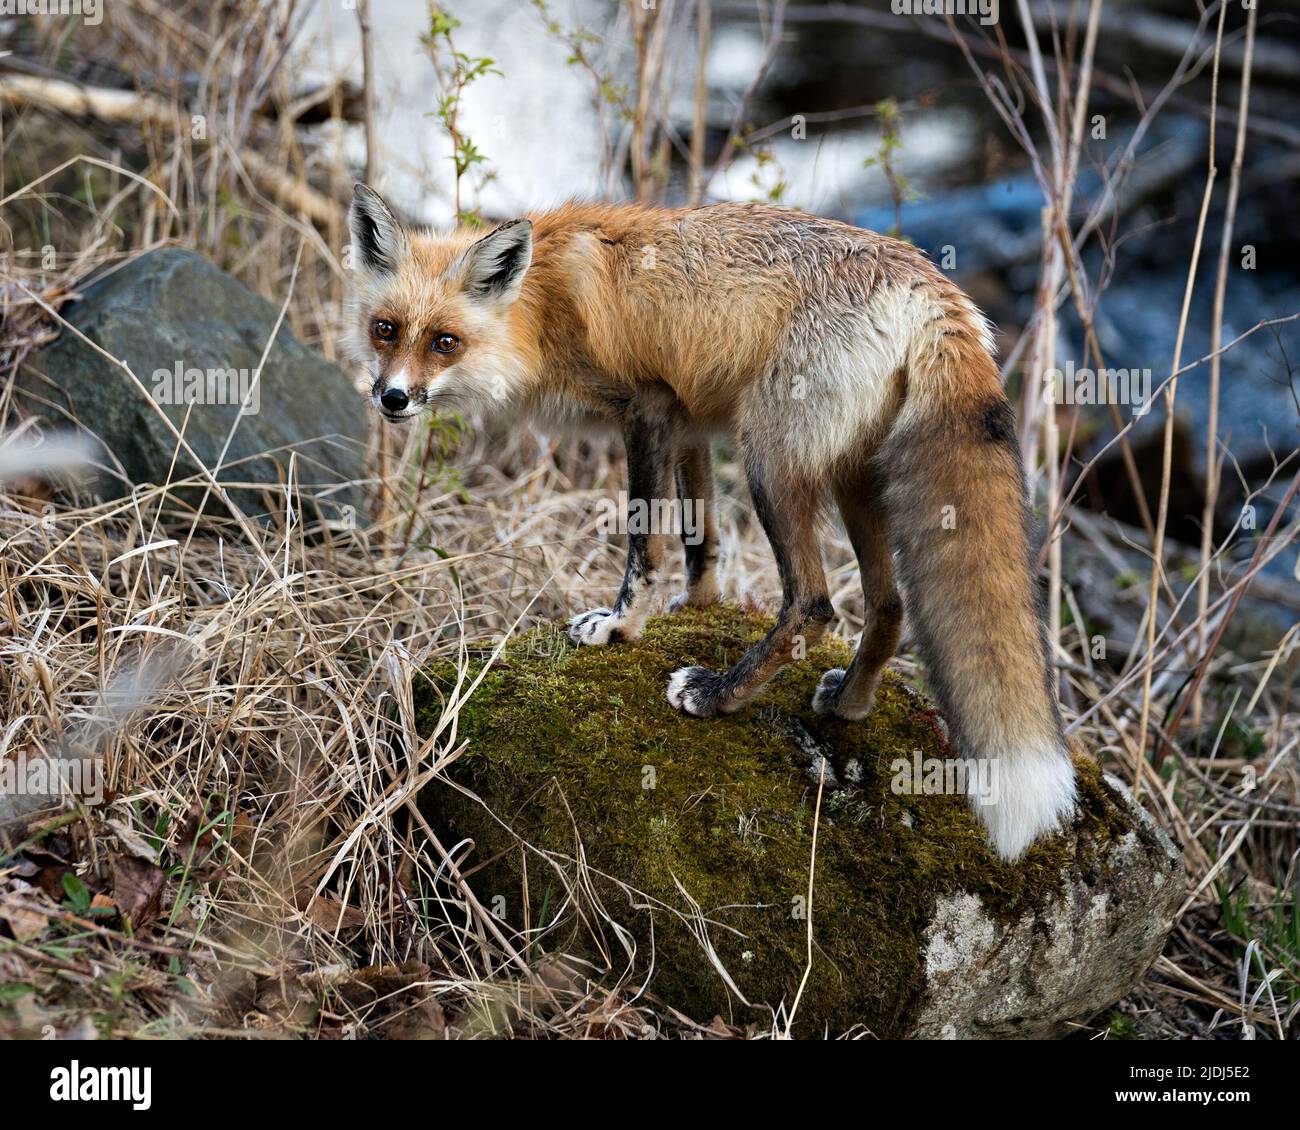 Red Fox si erge su muschio rock con sfondo sfocato e guarda la fotocamera nel suo ambiente e habitat. Immagine Fox. Immagine. Verticale. Foto Stock